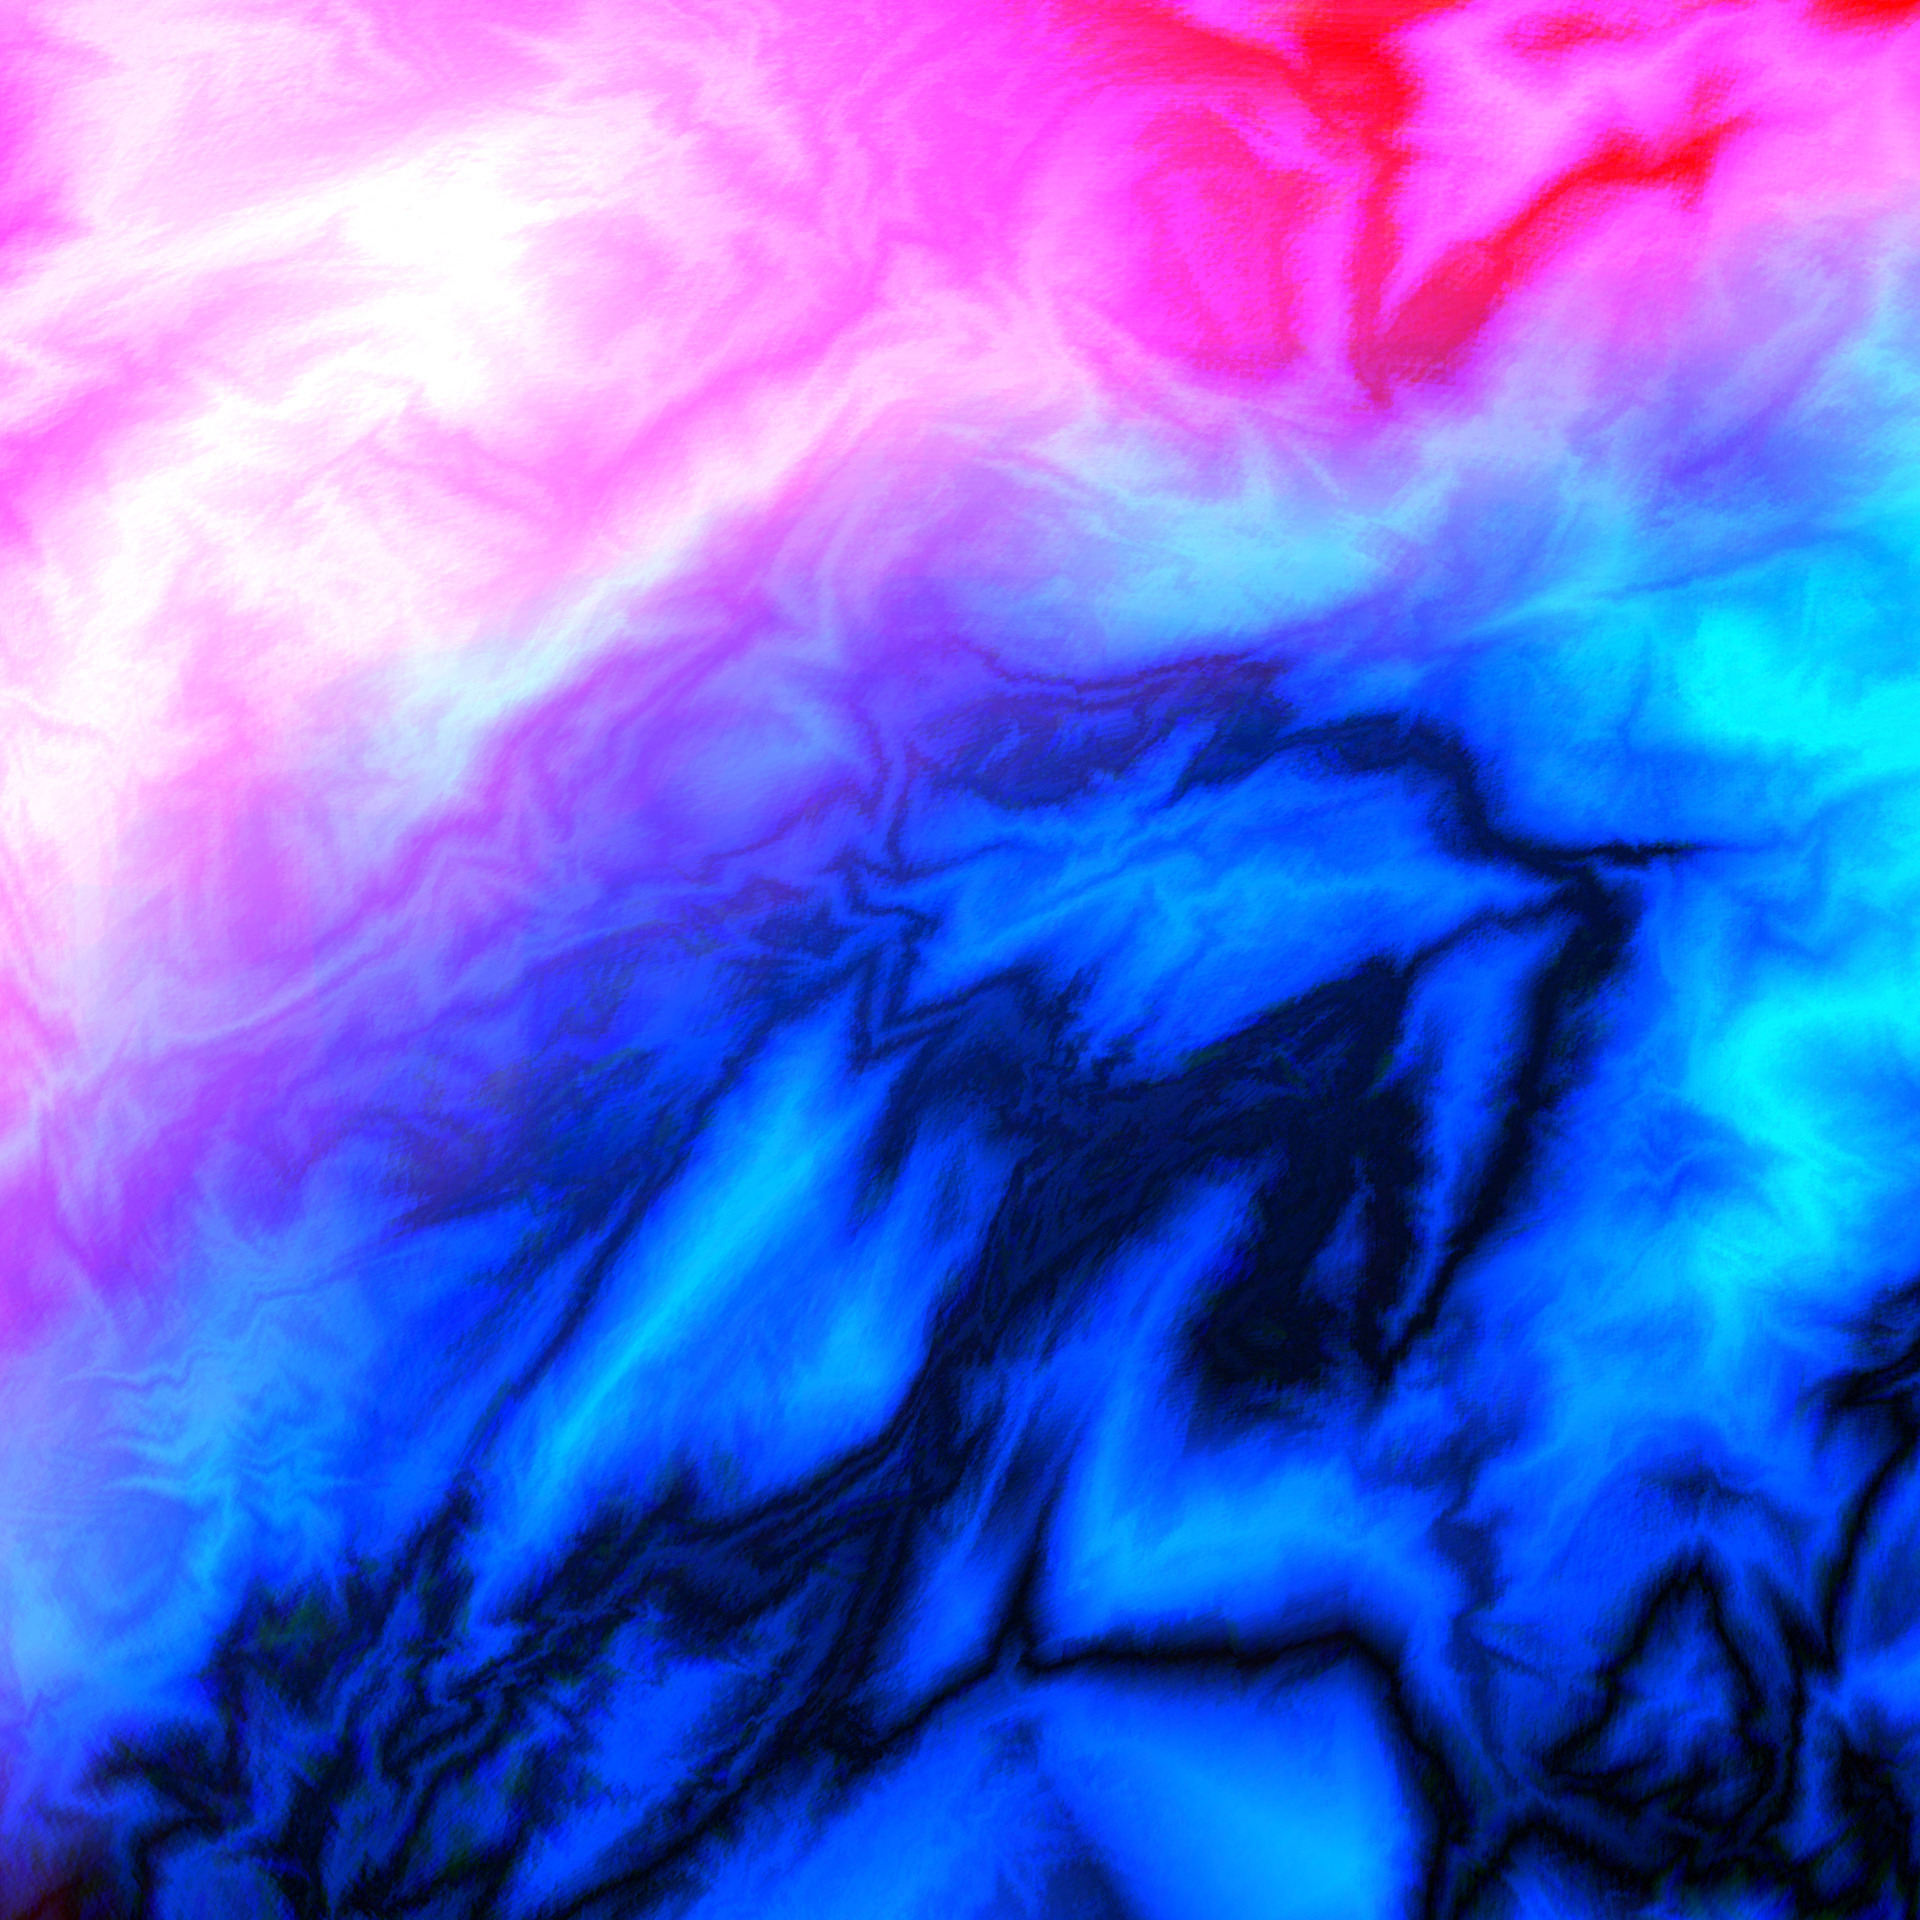 Dành một chút thời gian để chiêm ngưỡng những hình ảnh được tạo ra từ phông nền marble texture của Pink blue diffusion. Hãy để tâm hồn tràn đầy sự nghệ thuật này, đưa bạn đến những cảm xúc và trải nghiệm mới lạ, độc đáo và vô cùng thú vị!